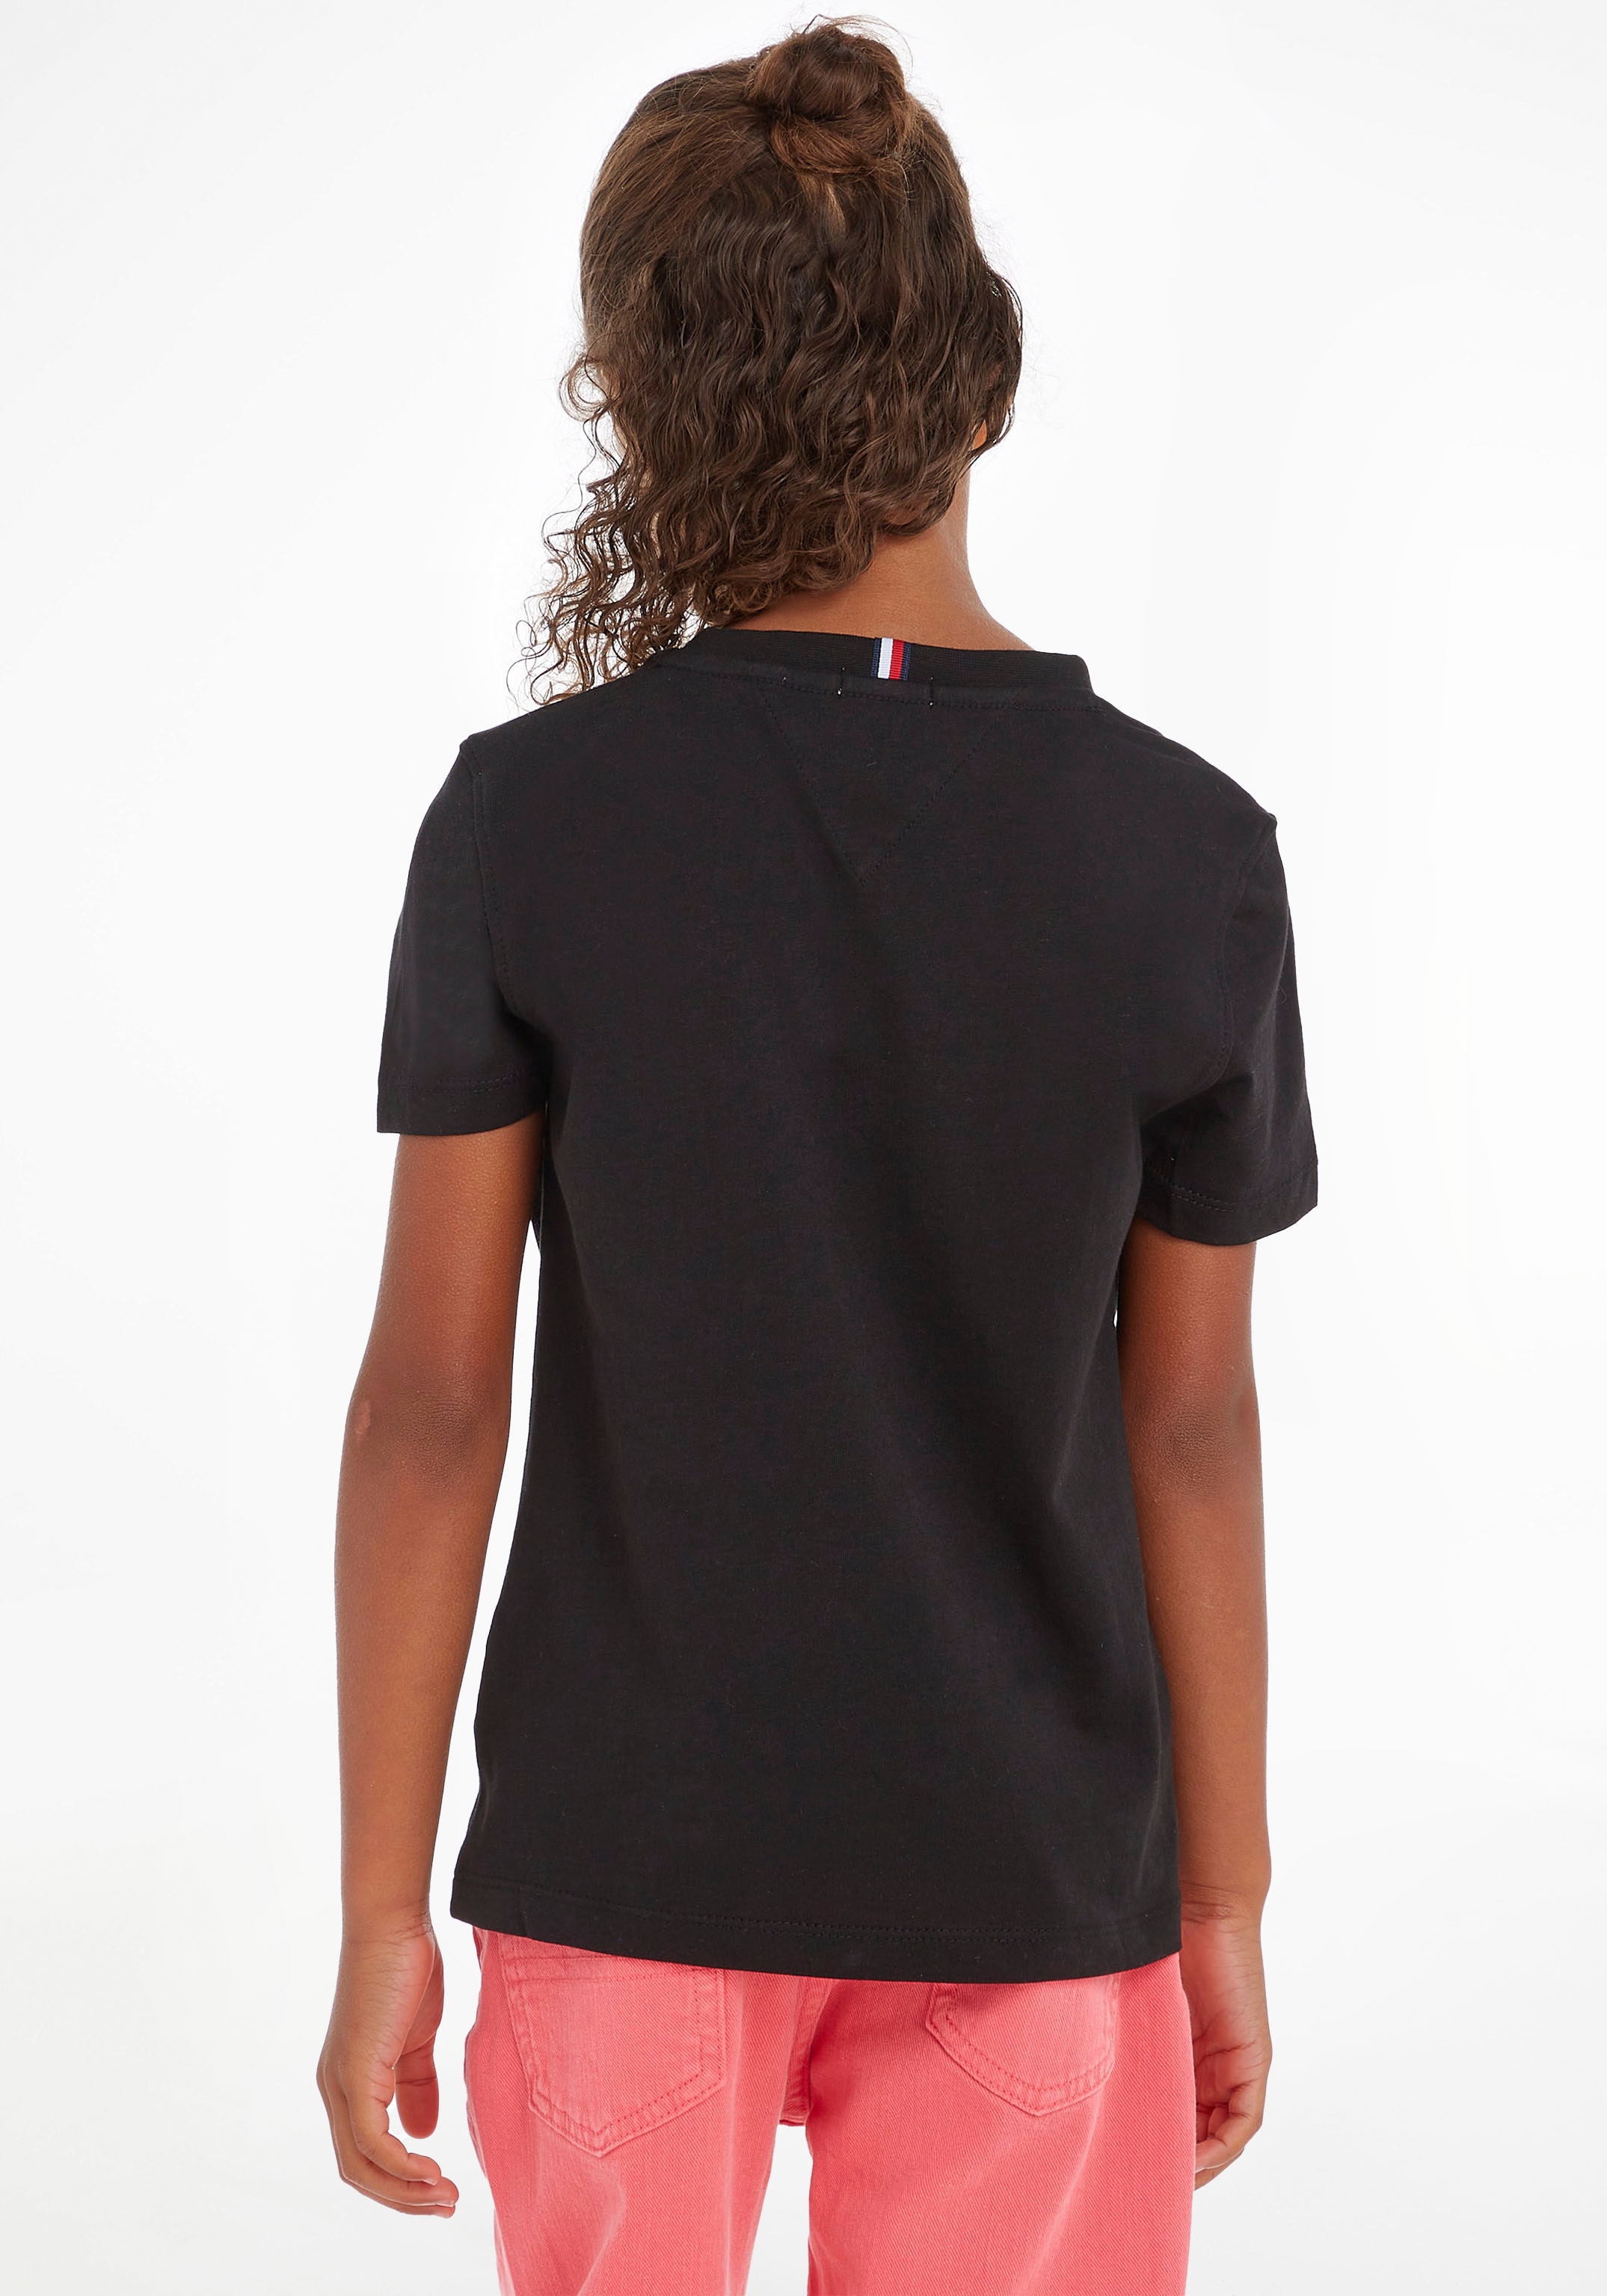 Tommy Hilfiger T-Shirt »ESSENTIAL TEE«, Kinder Kids Junior MiniMe,für Jungen